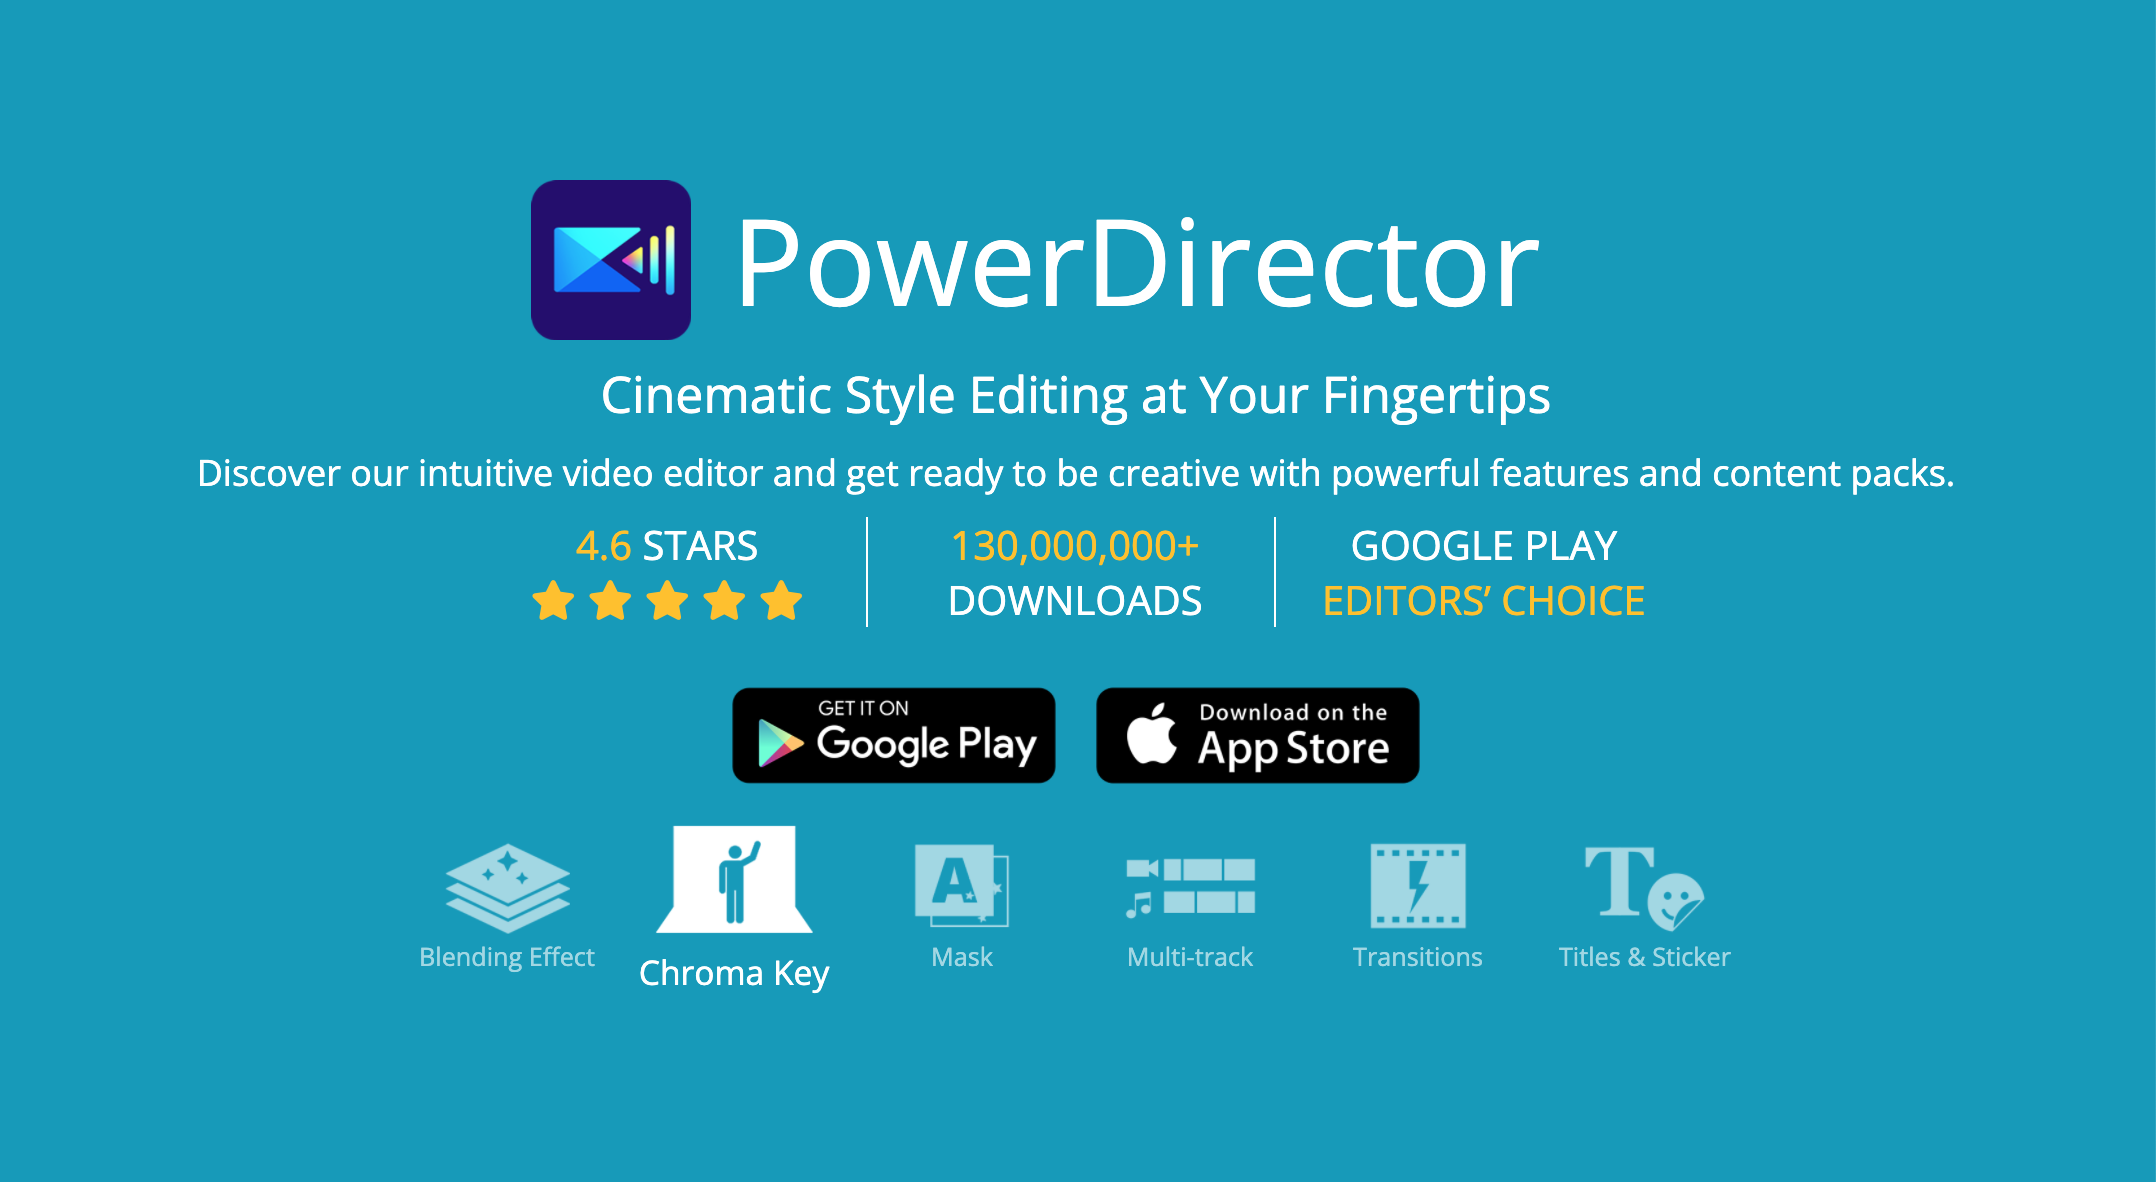 powerdirector app